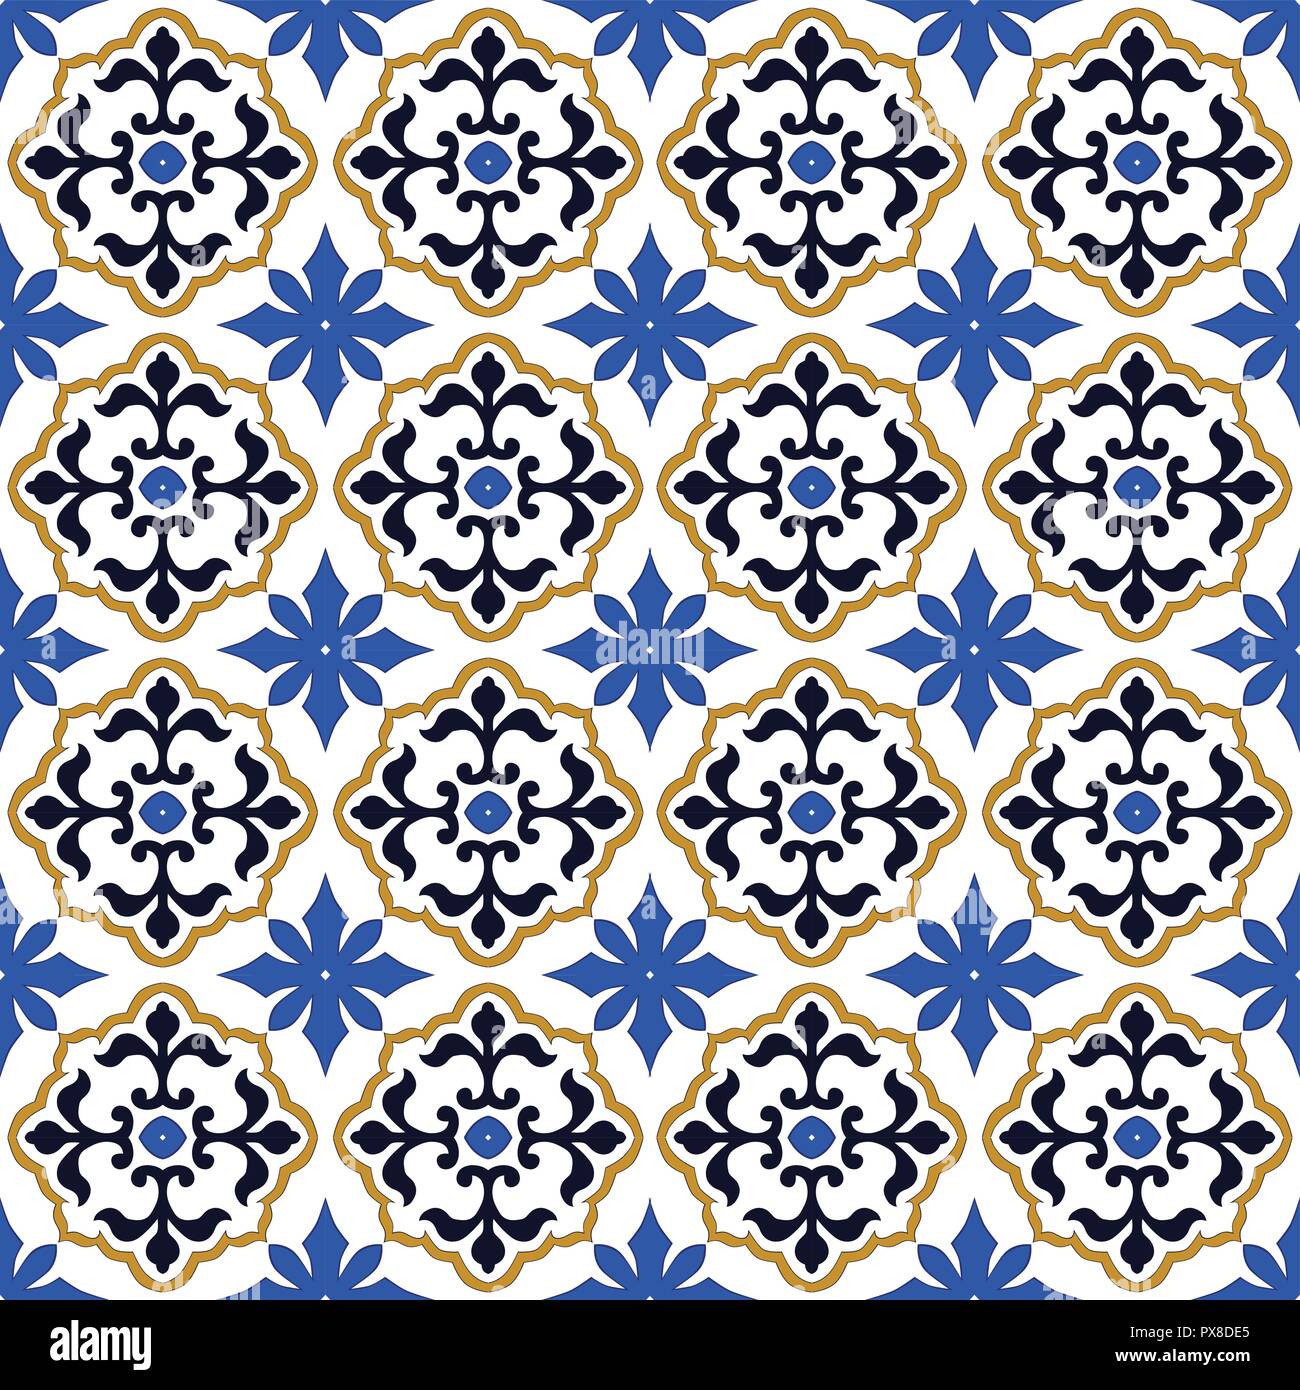 Di stile Spagnolo pattern, usualmente utilizzati nelle piastrelle in Spagna, Portogallo e altri paesi del bacino del Mediterraneo Illustrazione Vettoriale